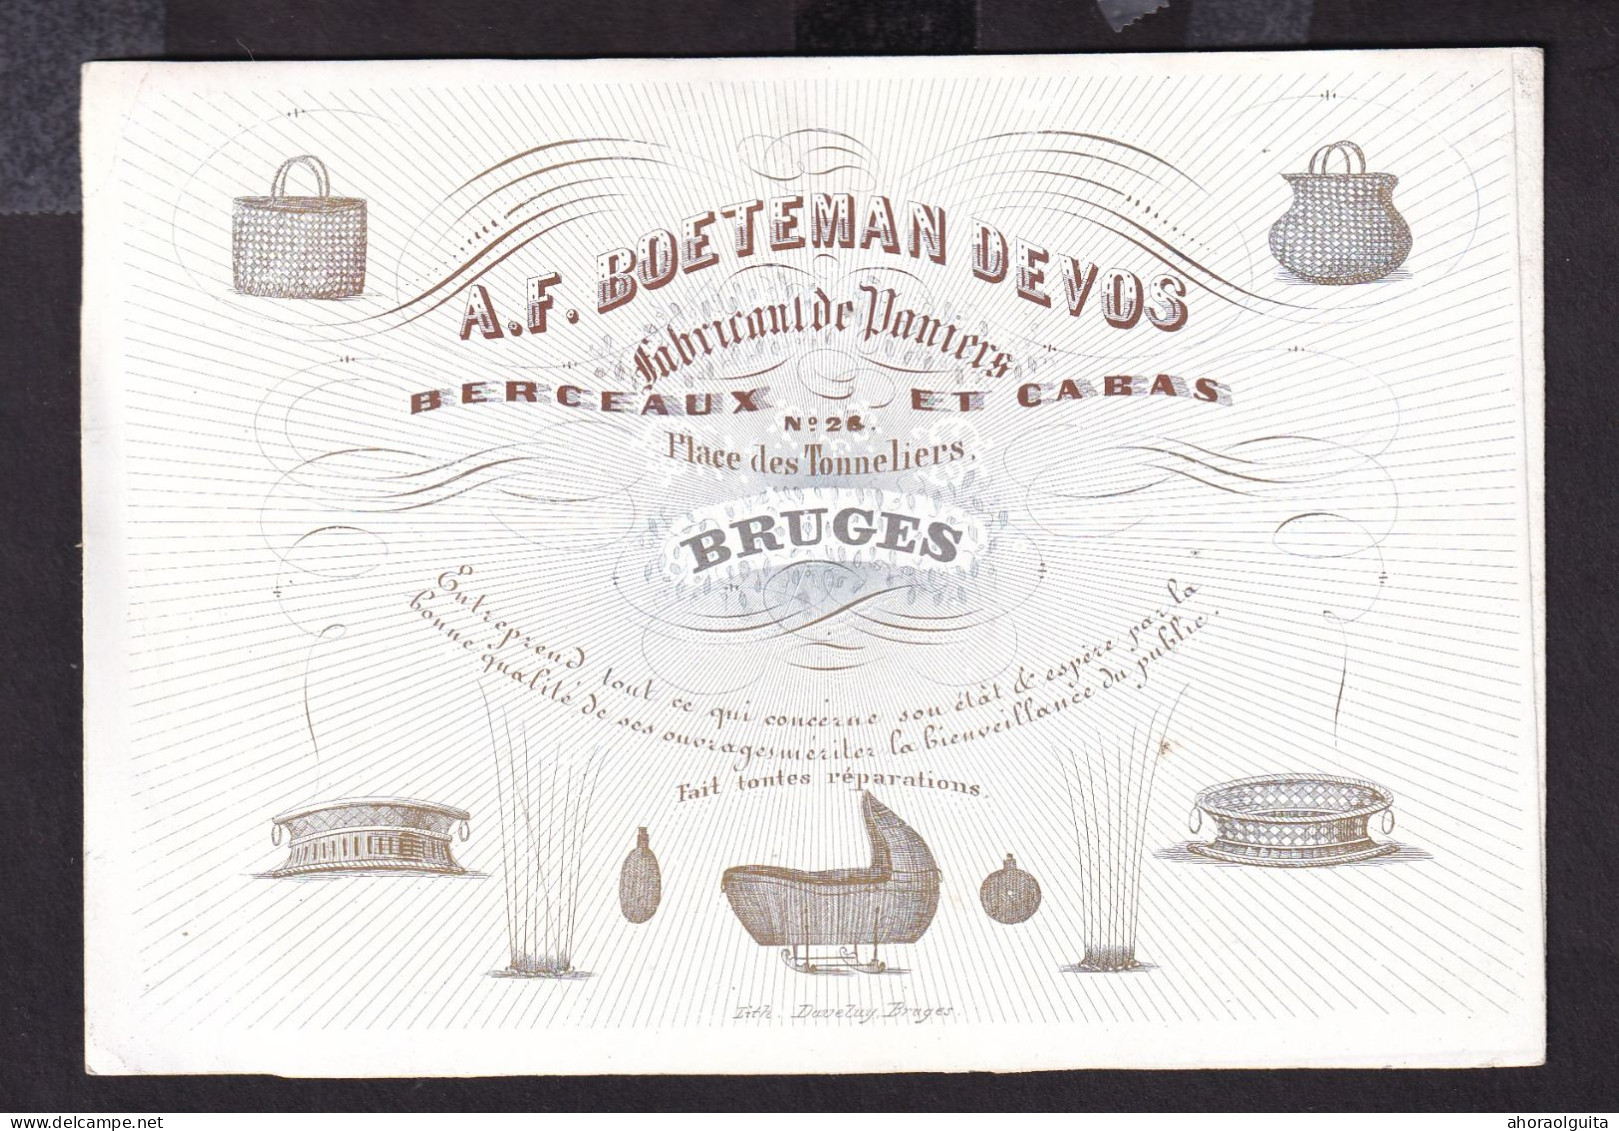 596/29 -- BRUGES CARTE PORCELAINE - Carte Illustrée Boeteman Devos, Fabricant De Paniers, Berceaux - Litho Années1840/50 - Cartes De Visite